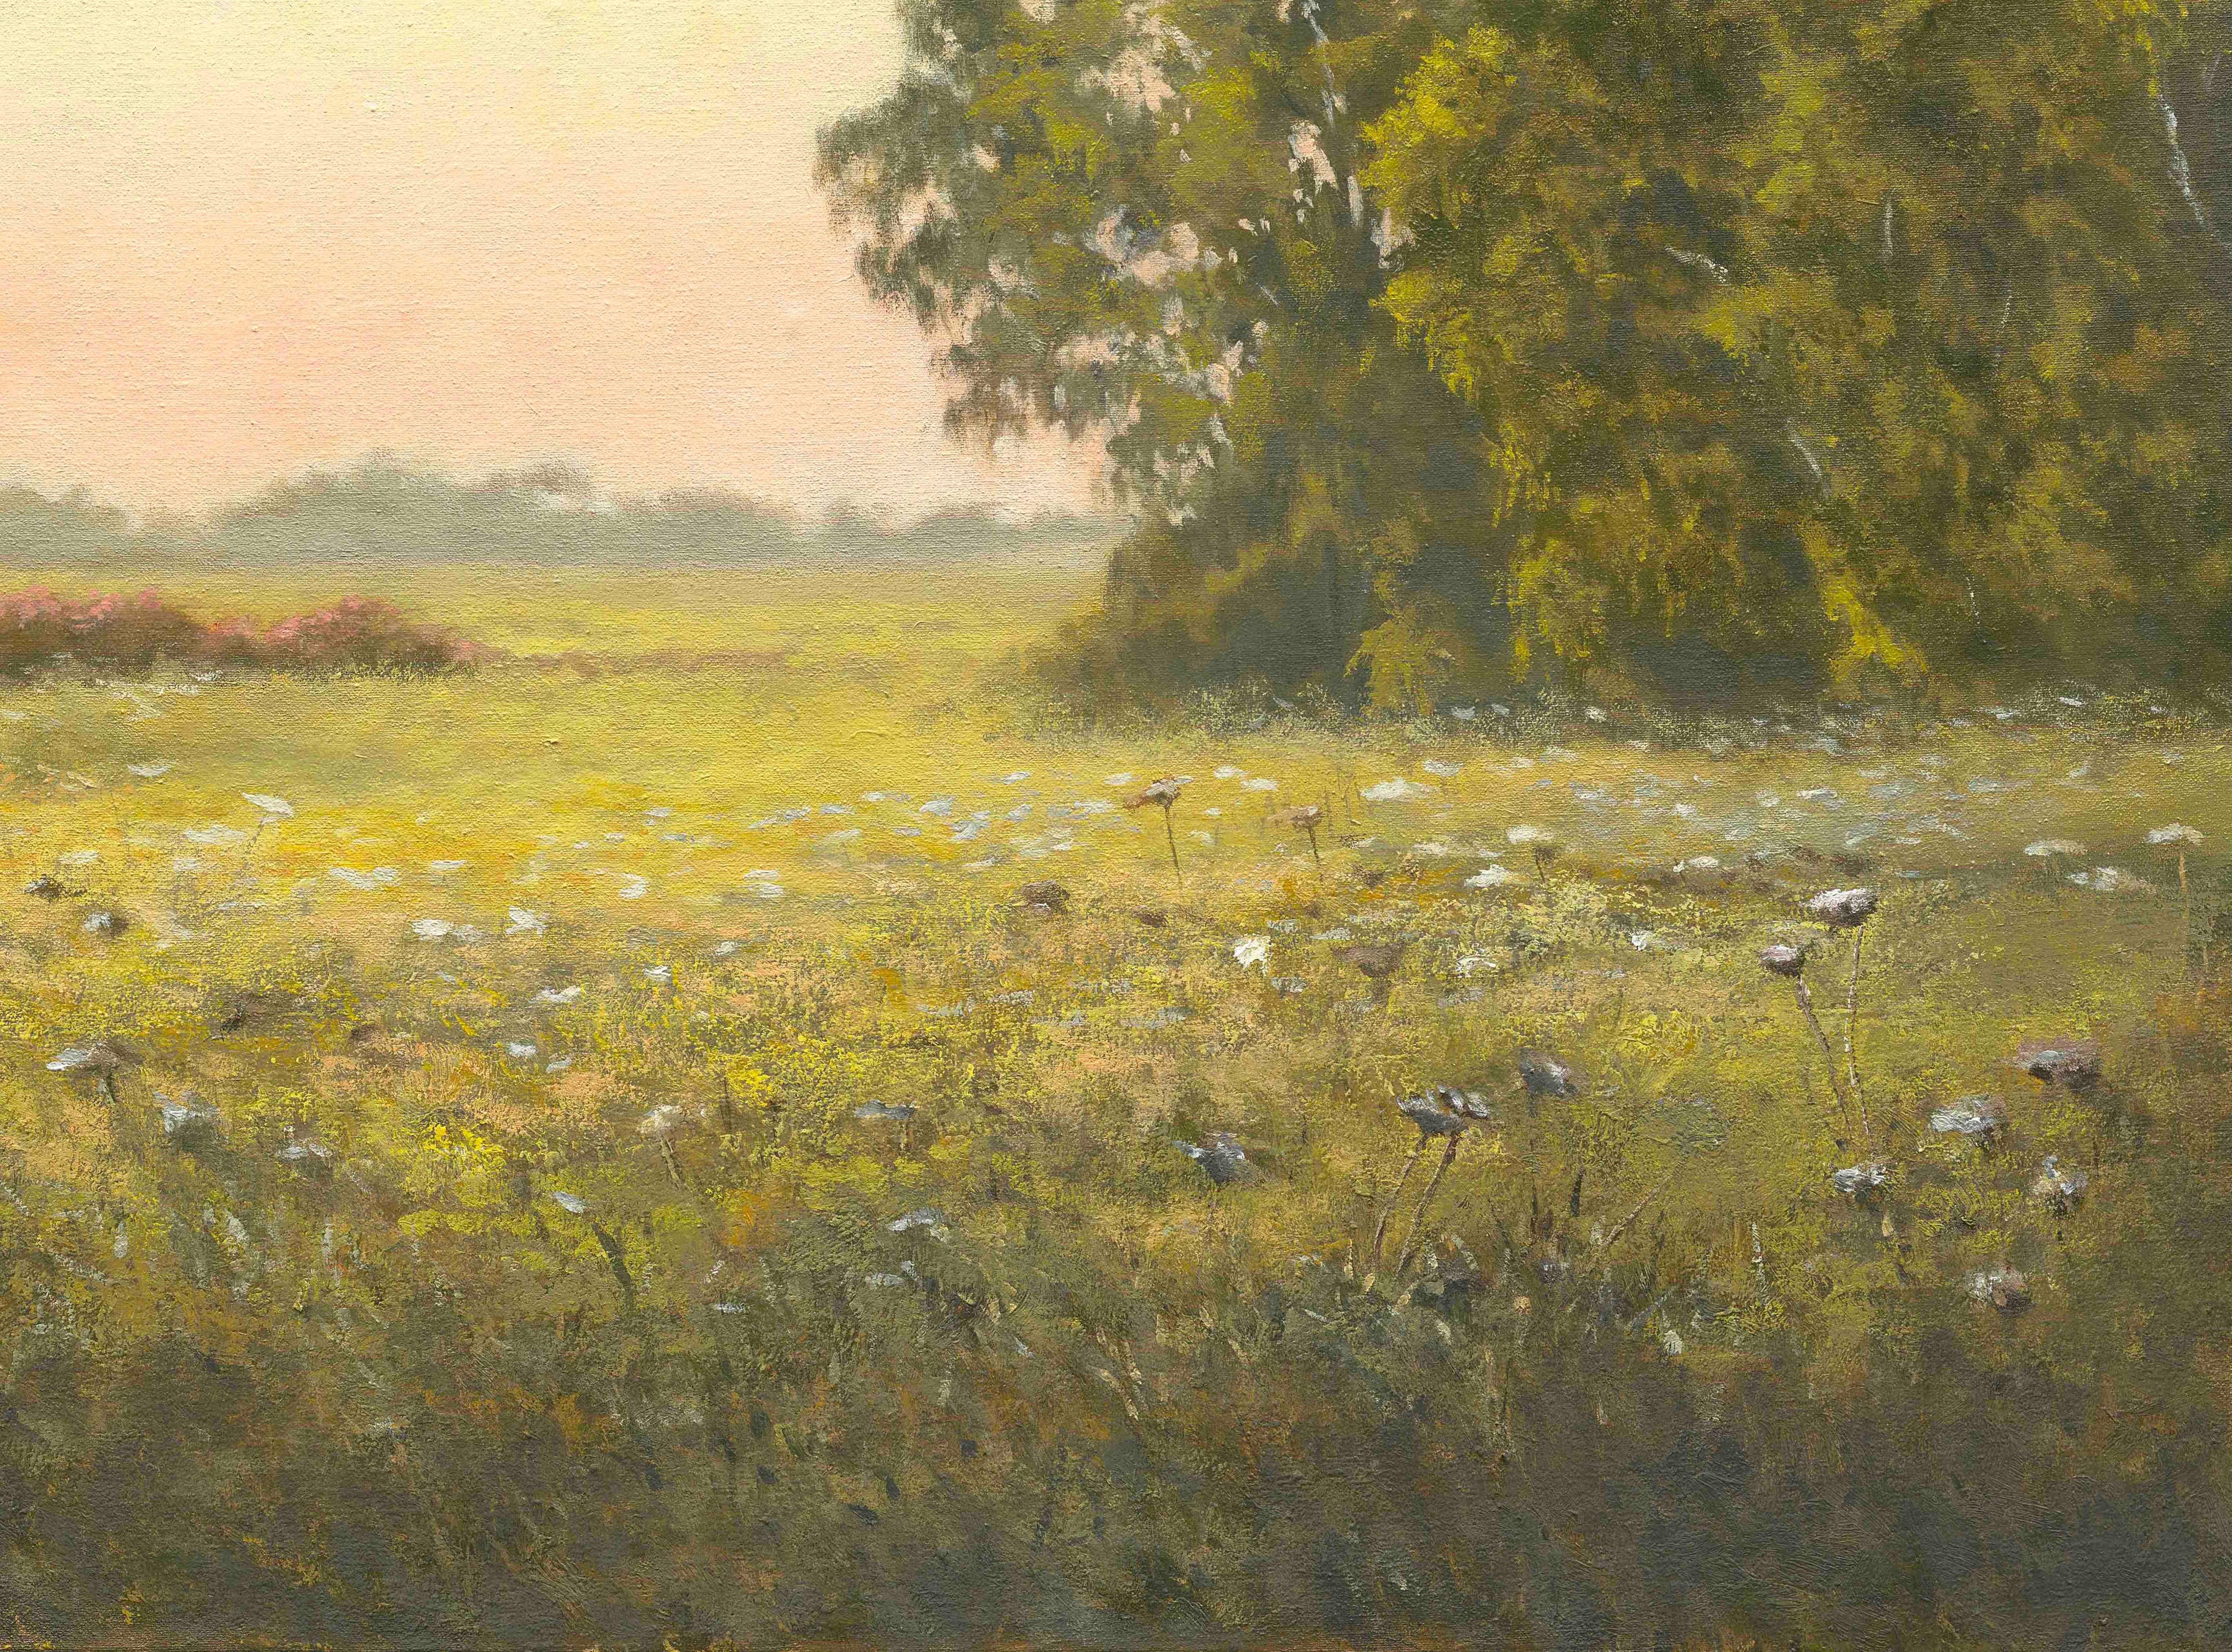 sunrise landscape paintings